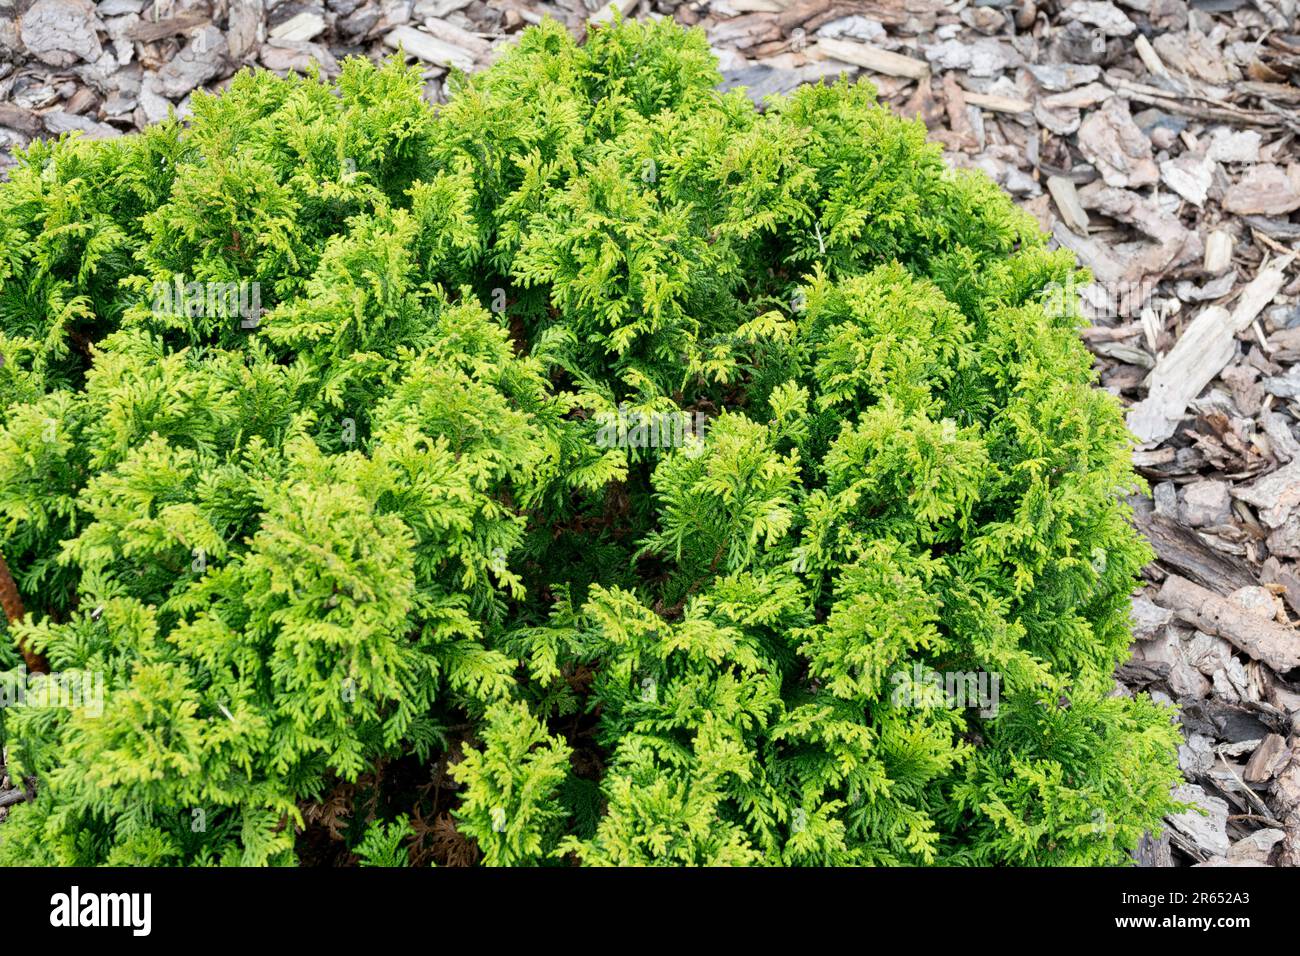 Chamaecyparis pisifera 'Nana' Chamaecyparis 'Nana' Dwarf Evergreen Sawara Cypress Stock Photo